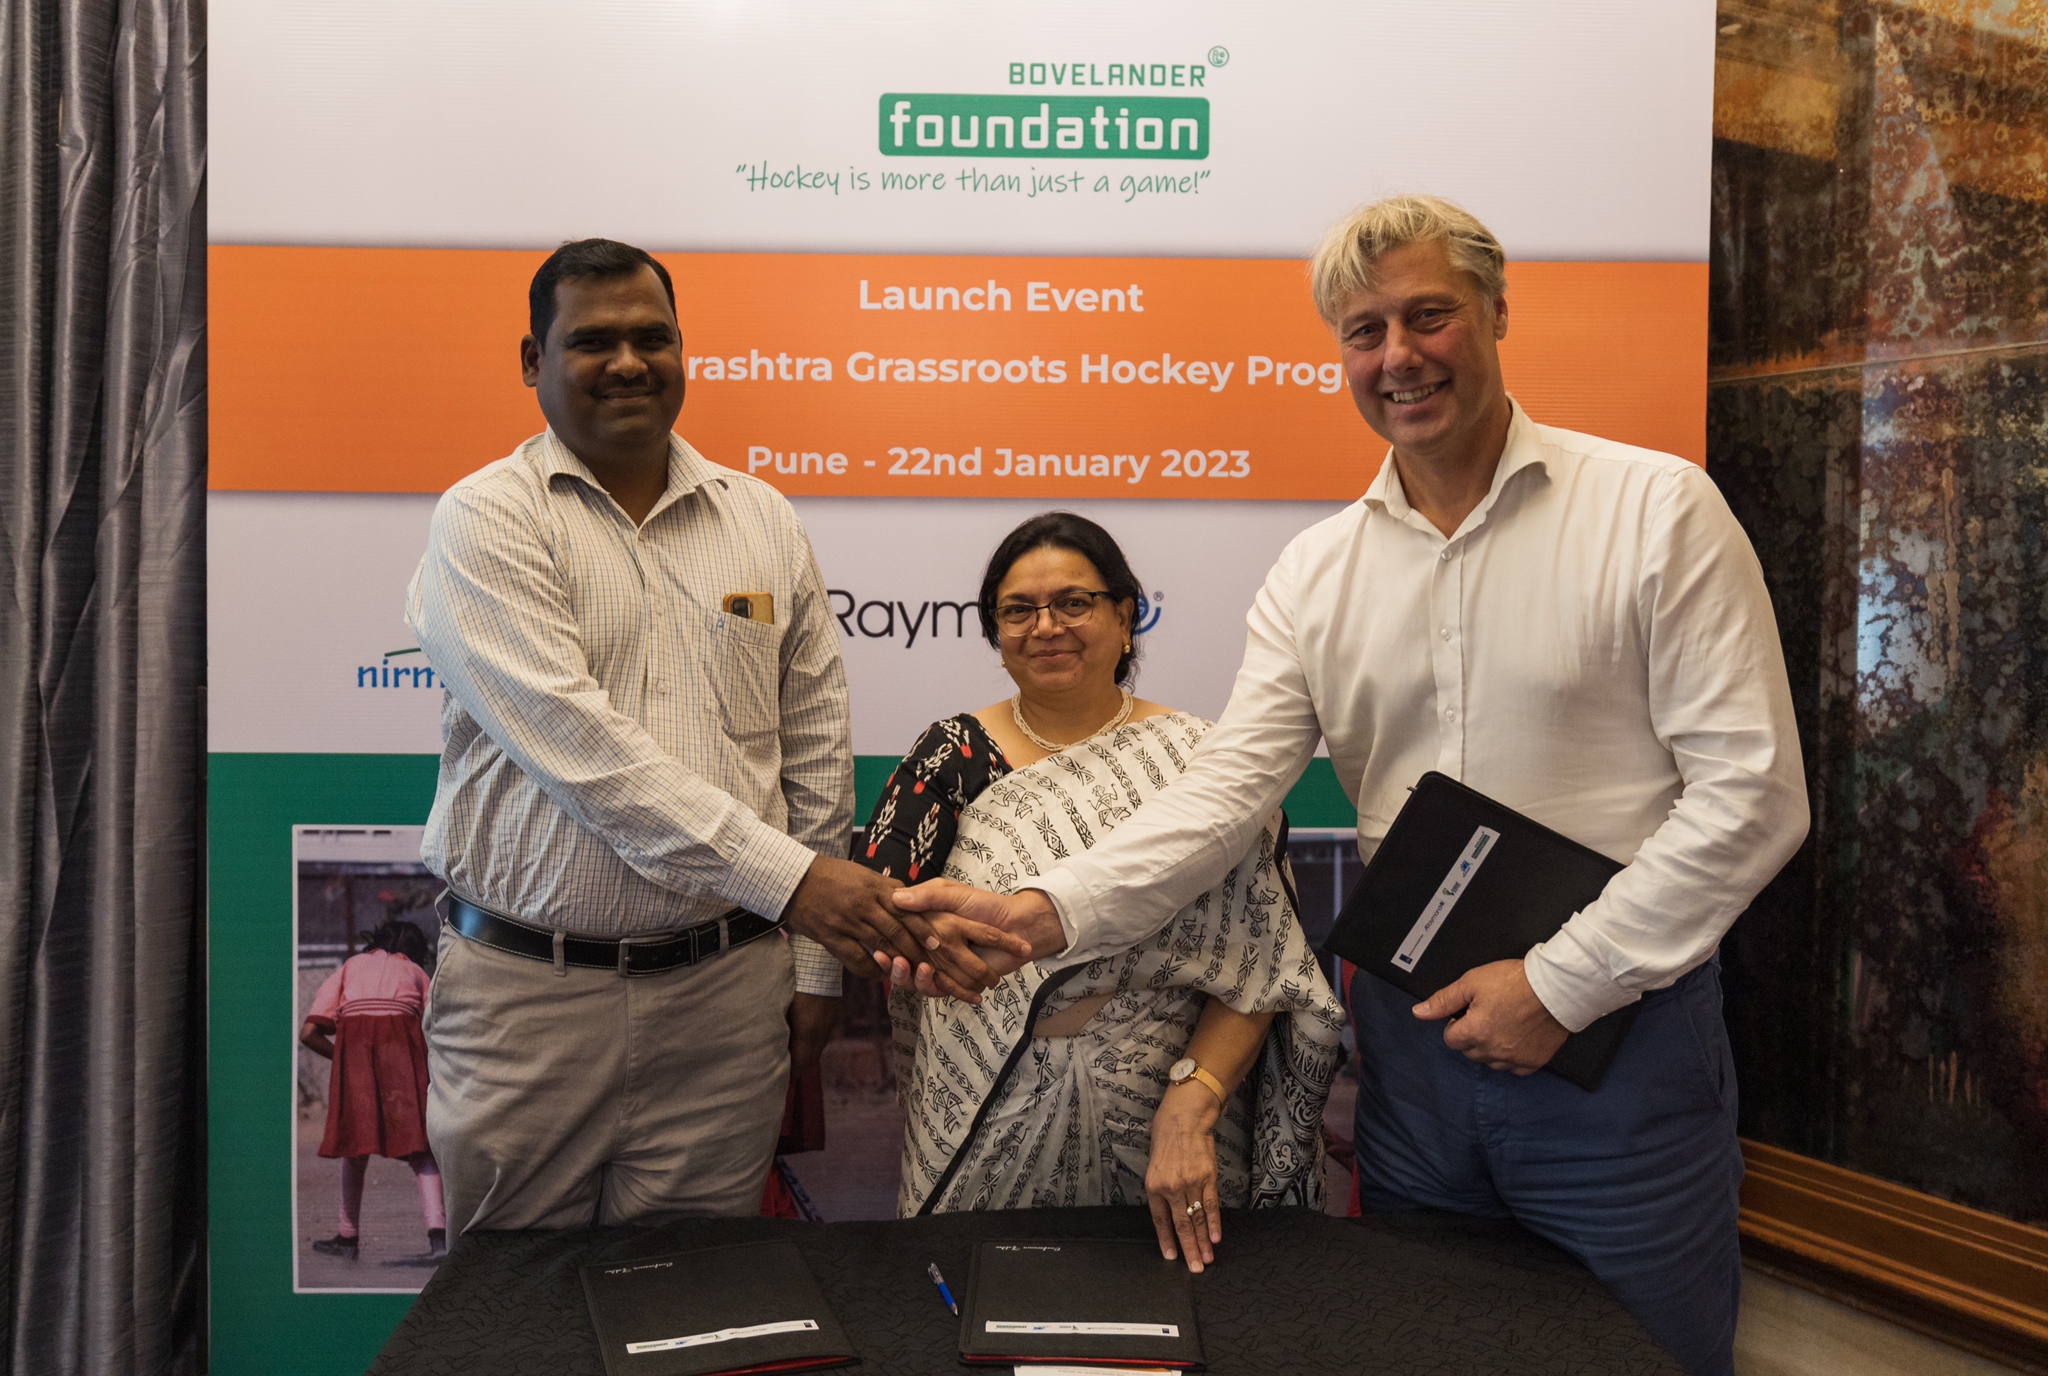 Bovelander foundation and Araymond India